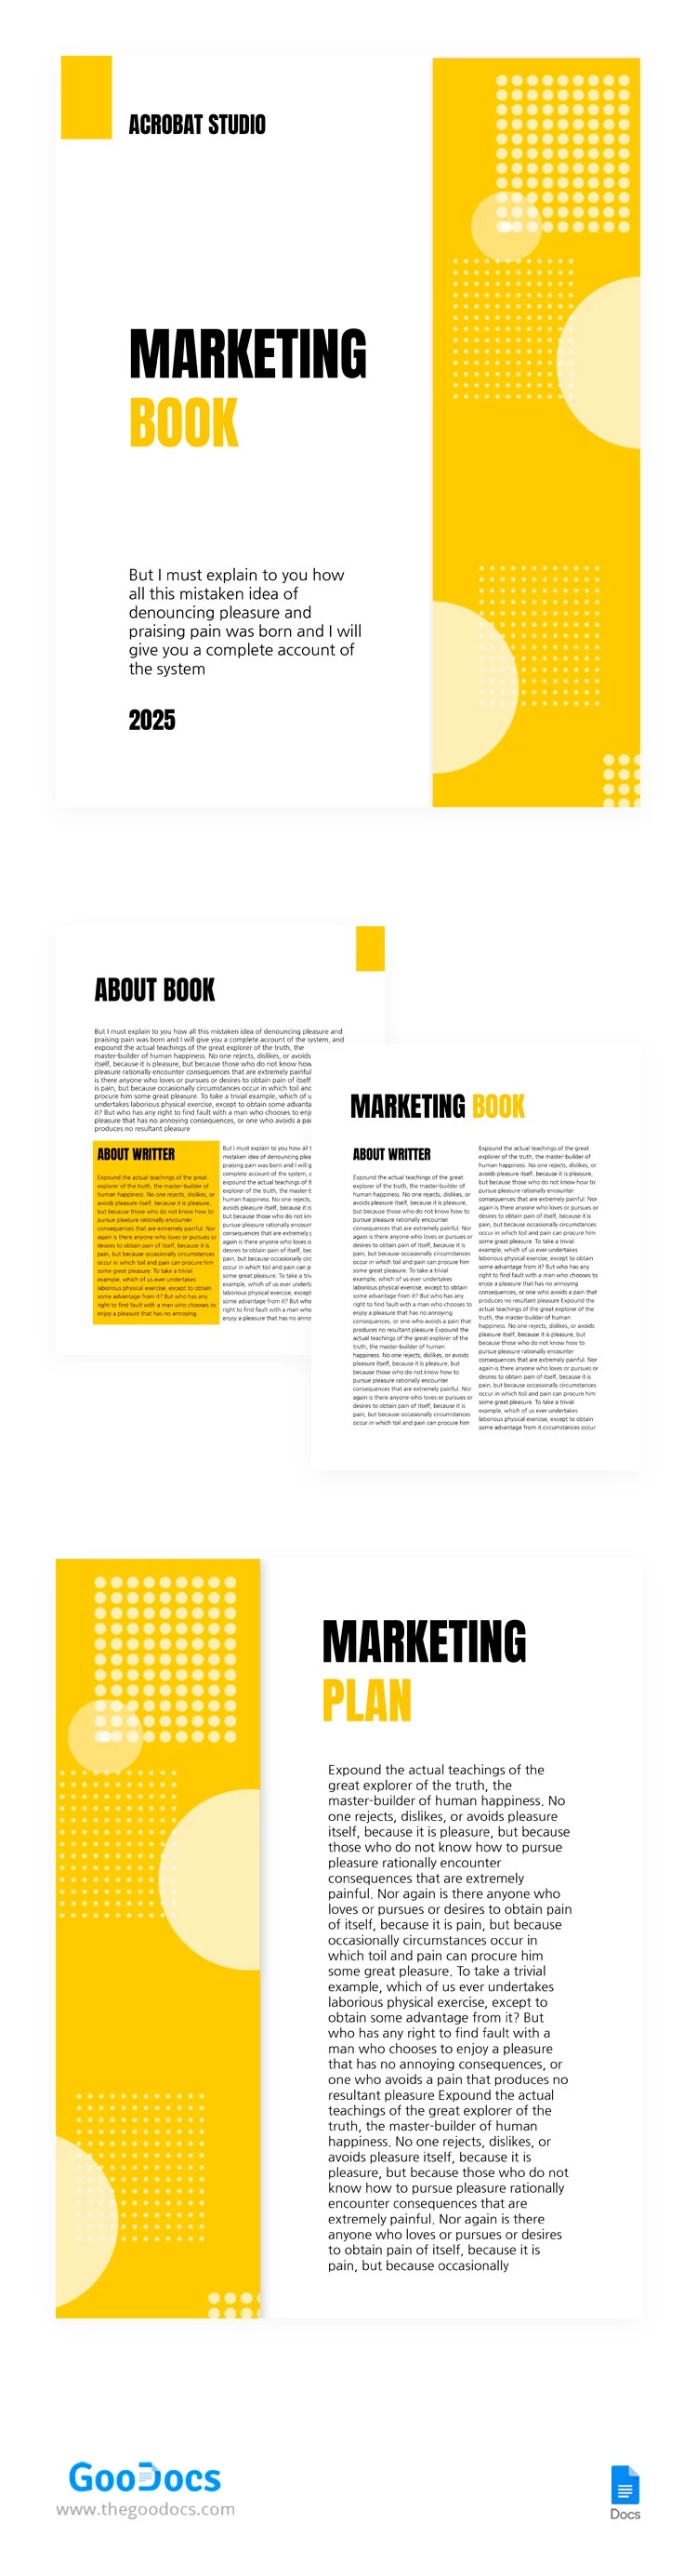 Livro de Marketing Amarelo - free Google Docs Template - 10064968